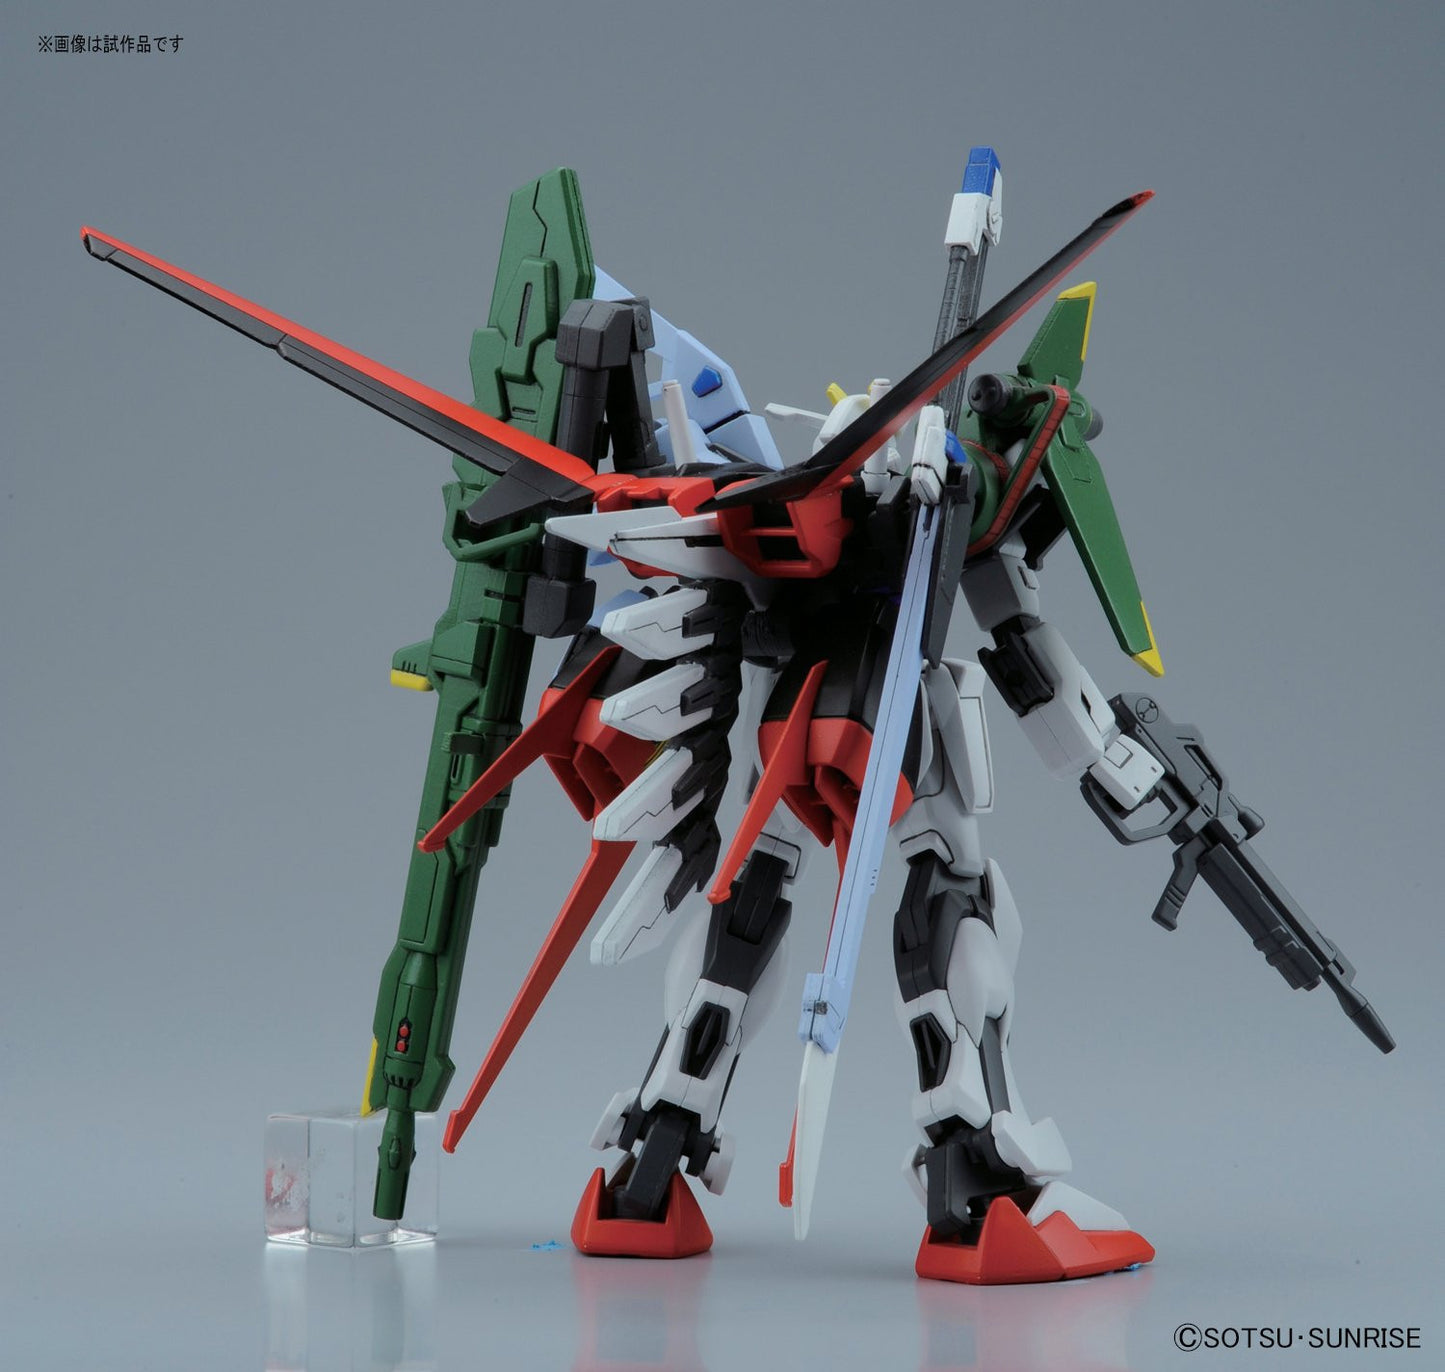 HG 1/144 Perfect Strike Gundam [Remastered]